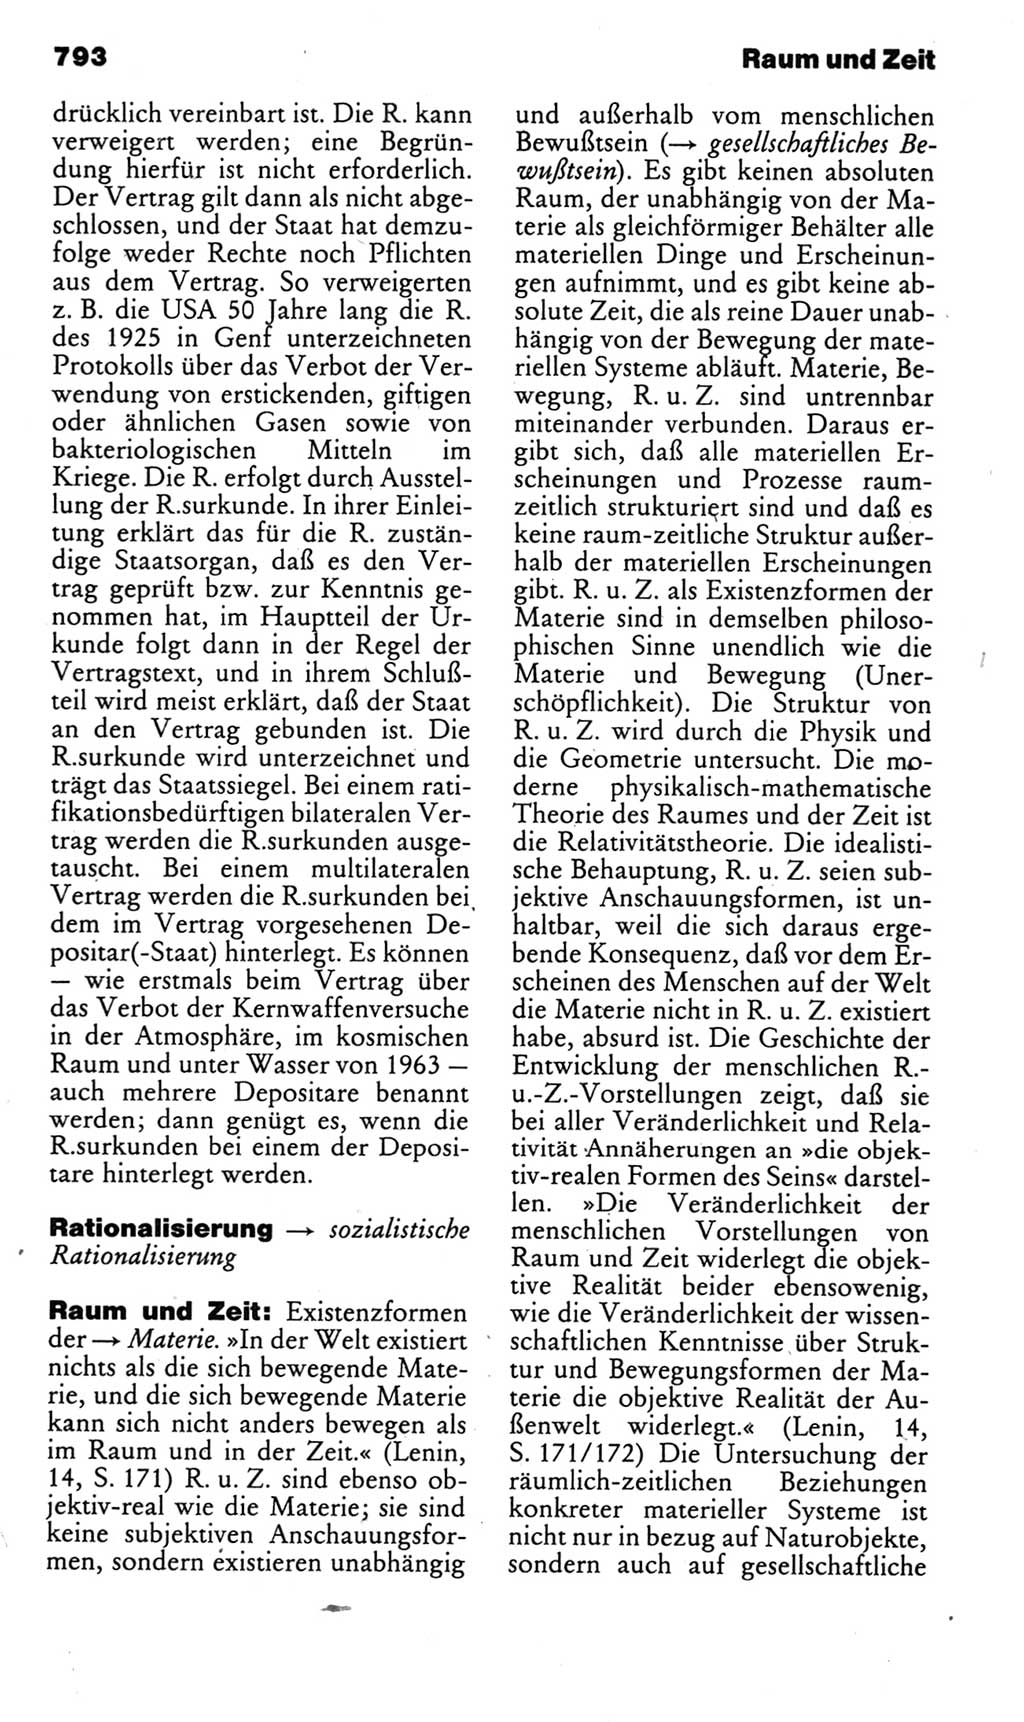 Kleines politisches Wörterbuch [Deutsche Demokratische Republik (DDR)] 1985, Seite 793 (Kl. pol. Wb. DDR 1985, S. 793)